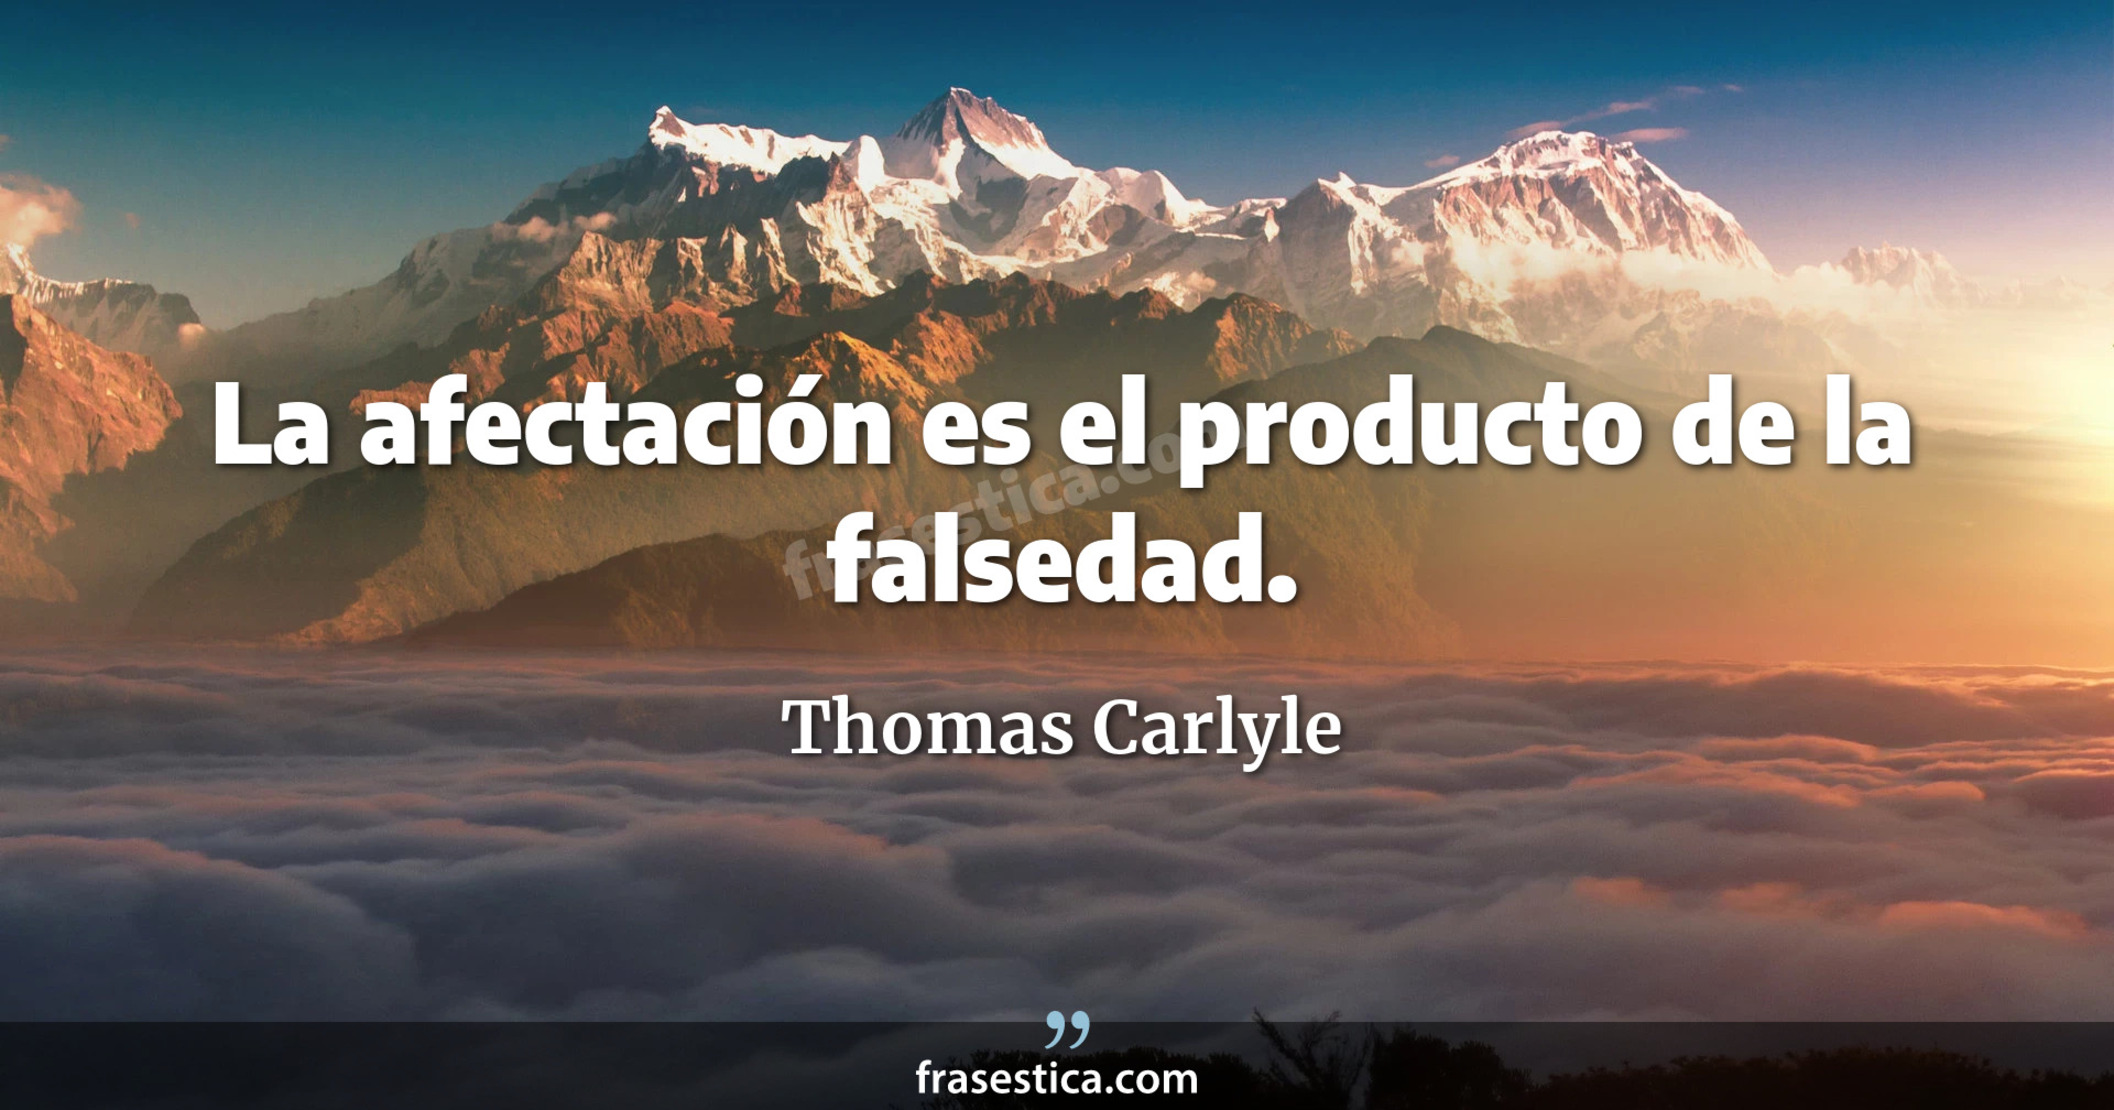 La afectación es el producto de la falsedad. - Thomas Carlyle